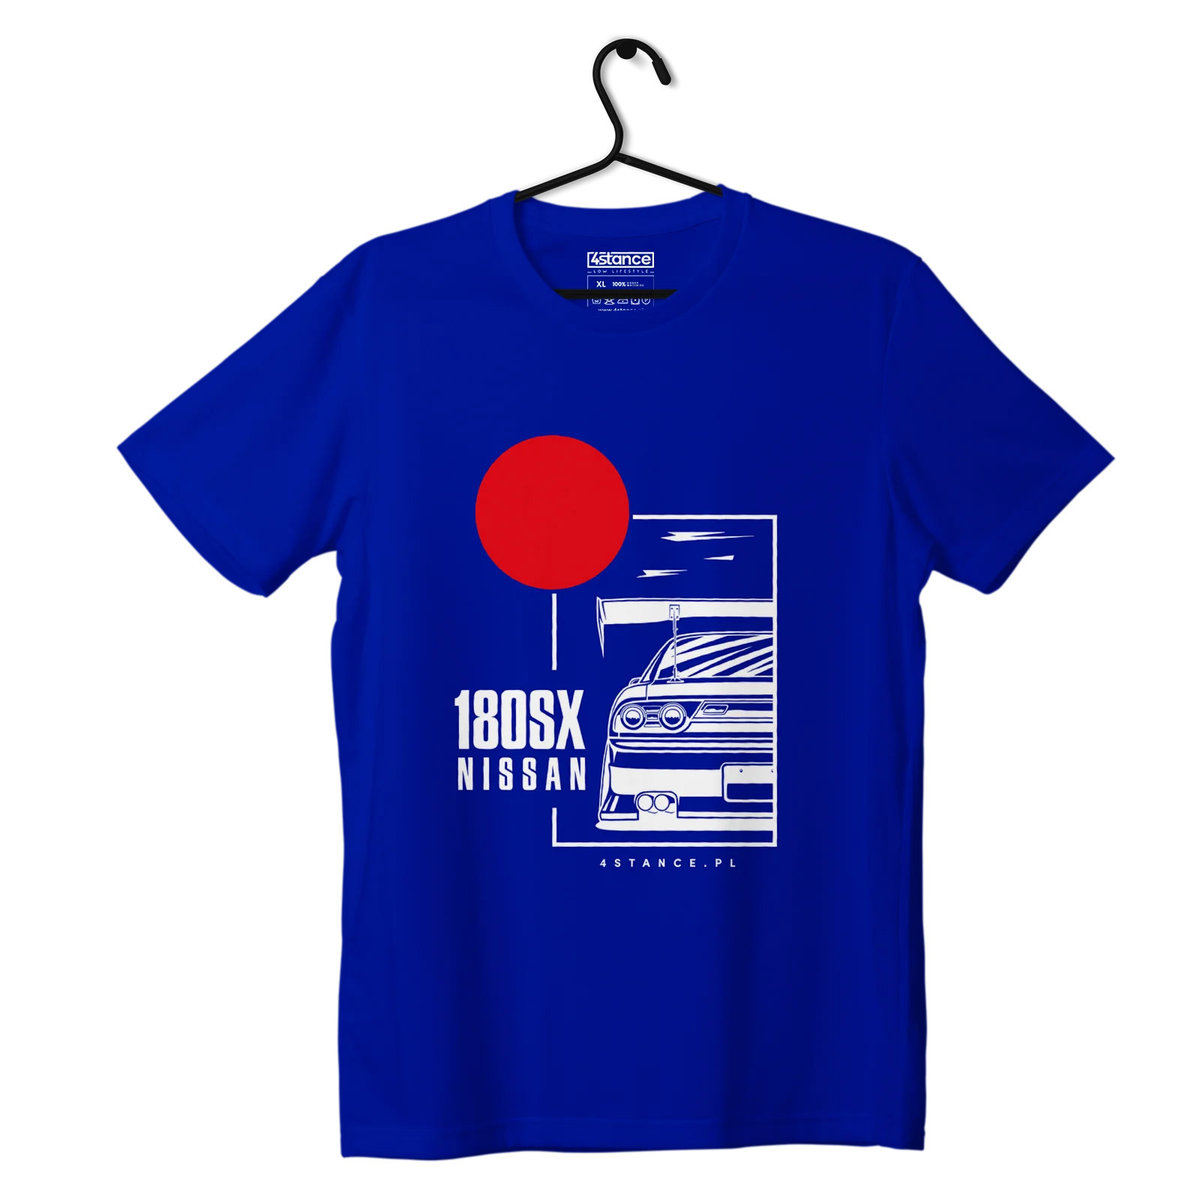 Zdjęcia - Odzież motocyklowa Nissan T-shirt koszulka  180SX niebieska-XXL 